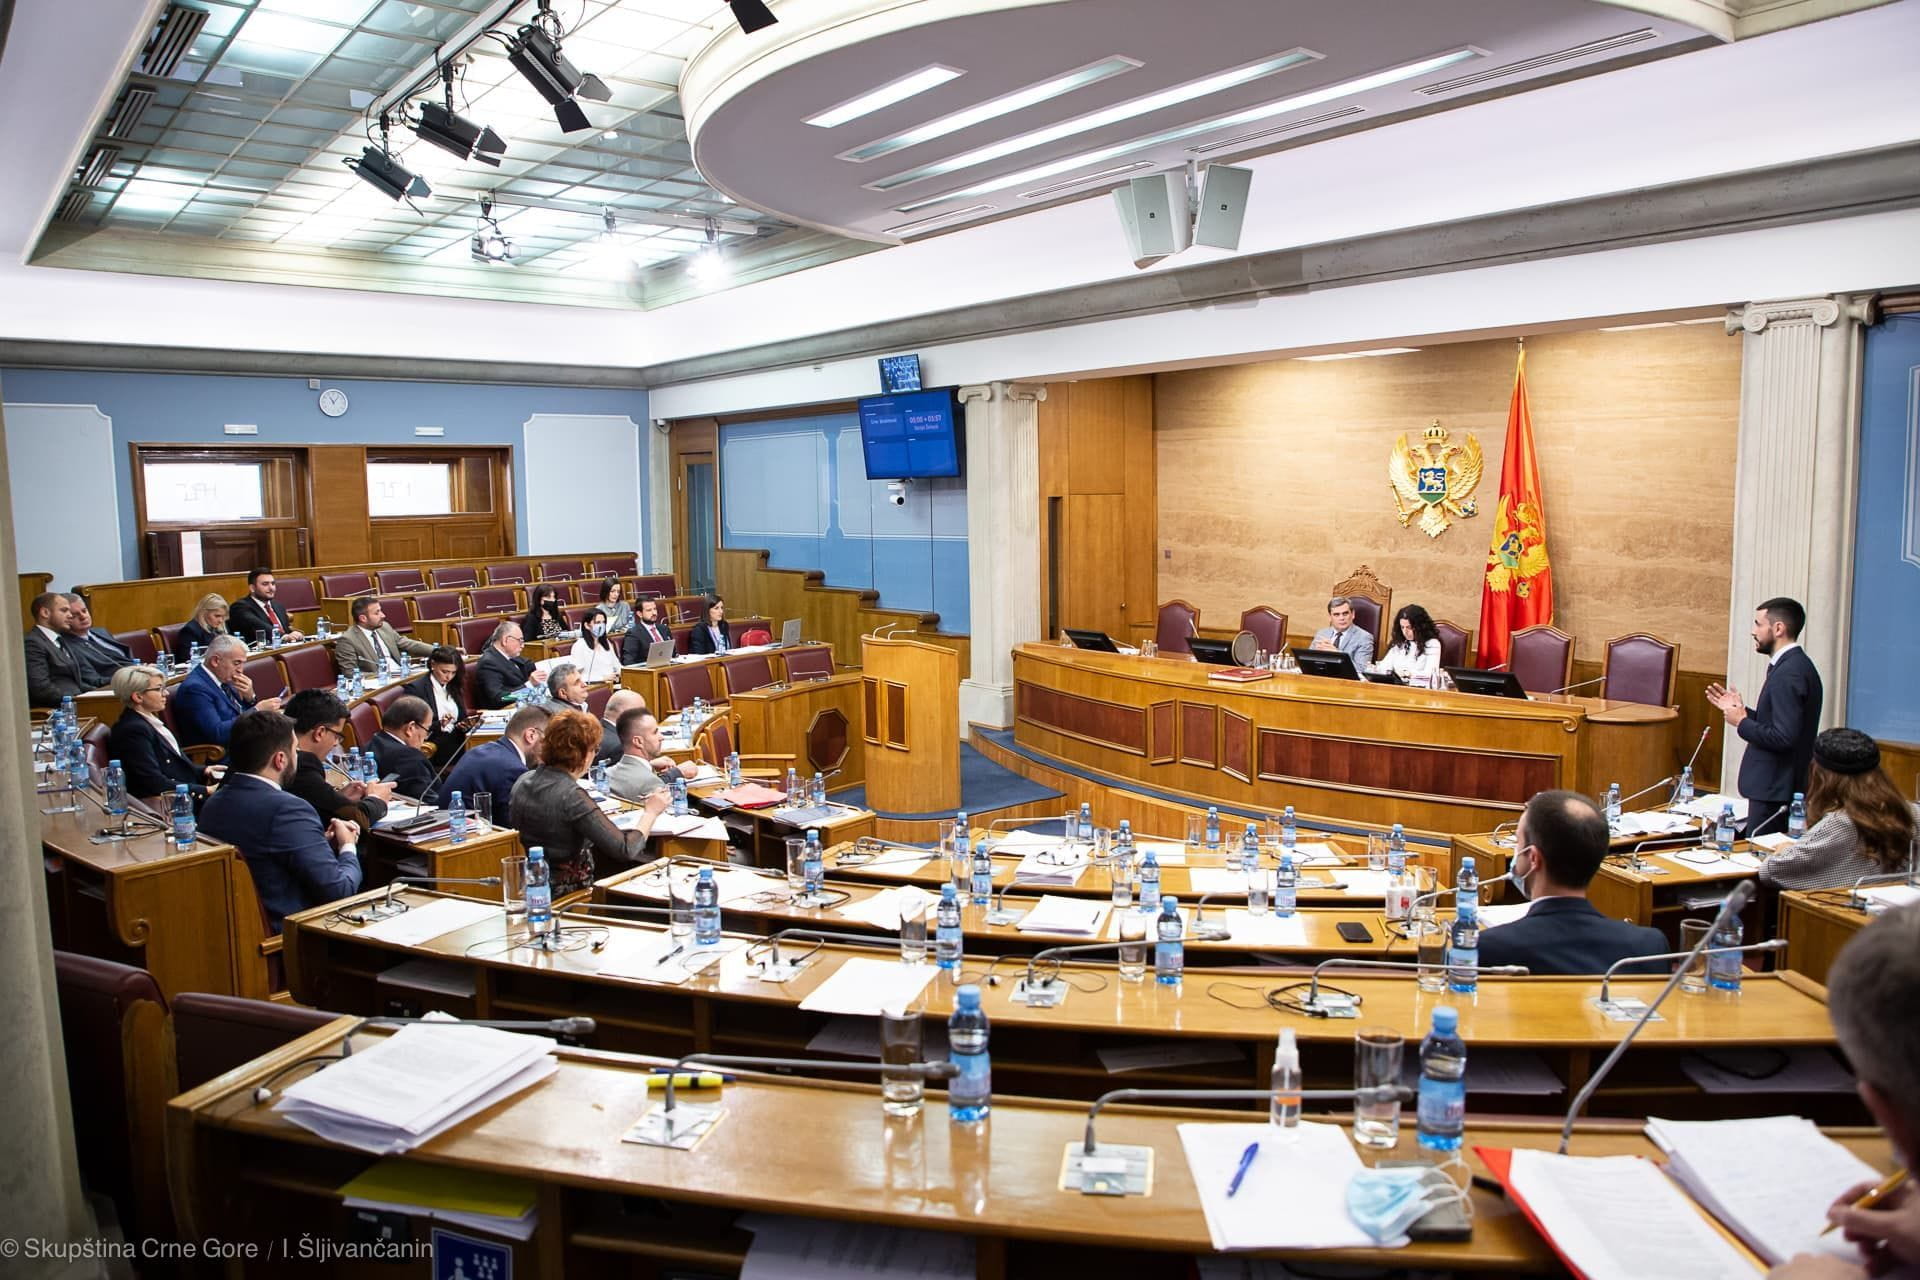 Skupština o Abazoviću i smjeni Vlade 3. i 4. februara